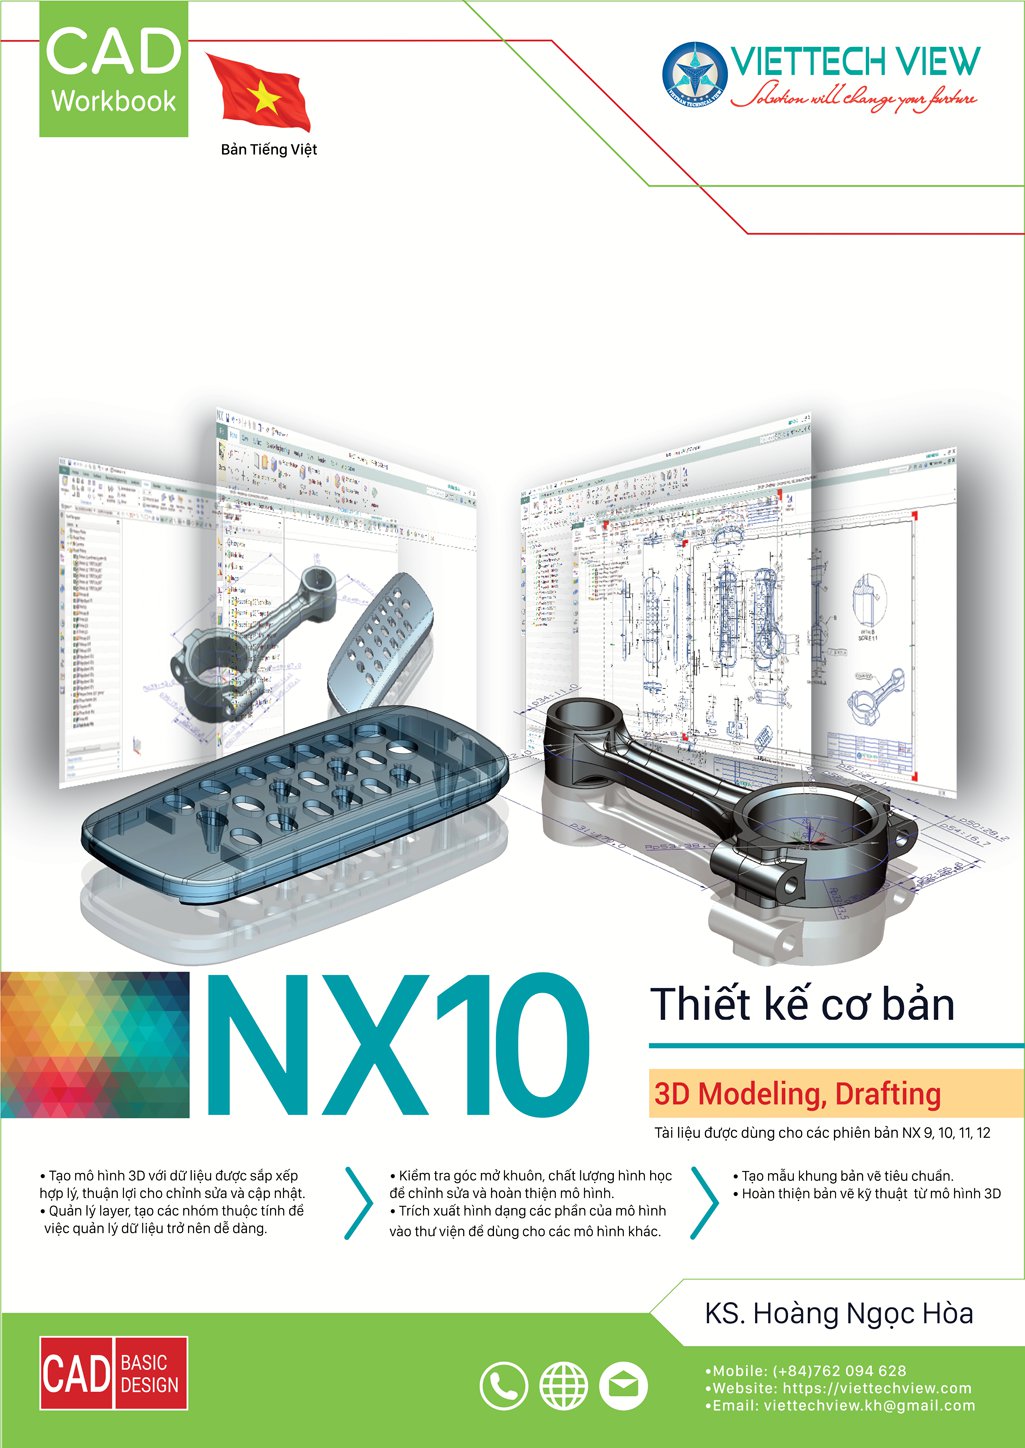 NX là một phần mềm thiết kế 3D chất lượng cao, được sử dụng rộng rãi trong ngành công nghiệp sản xuất. Xem hình ảnh về cá nhân, kết cấu và mô hình cơ khí của NX để hiểu rõ hơn về tính năng và ưu điểm của phần mềm này.